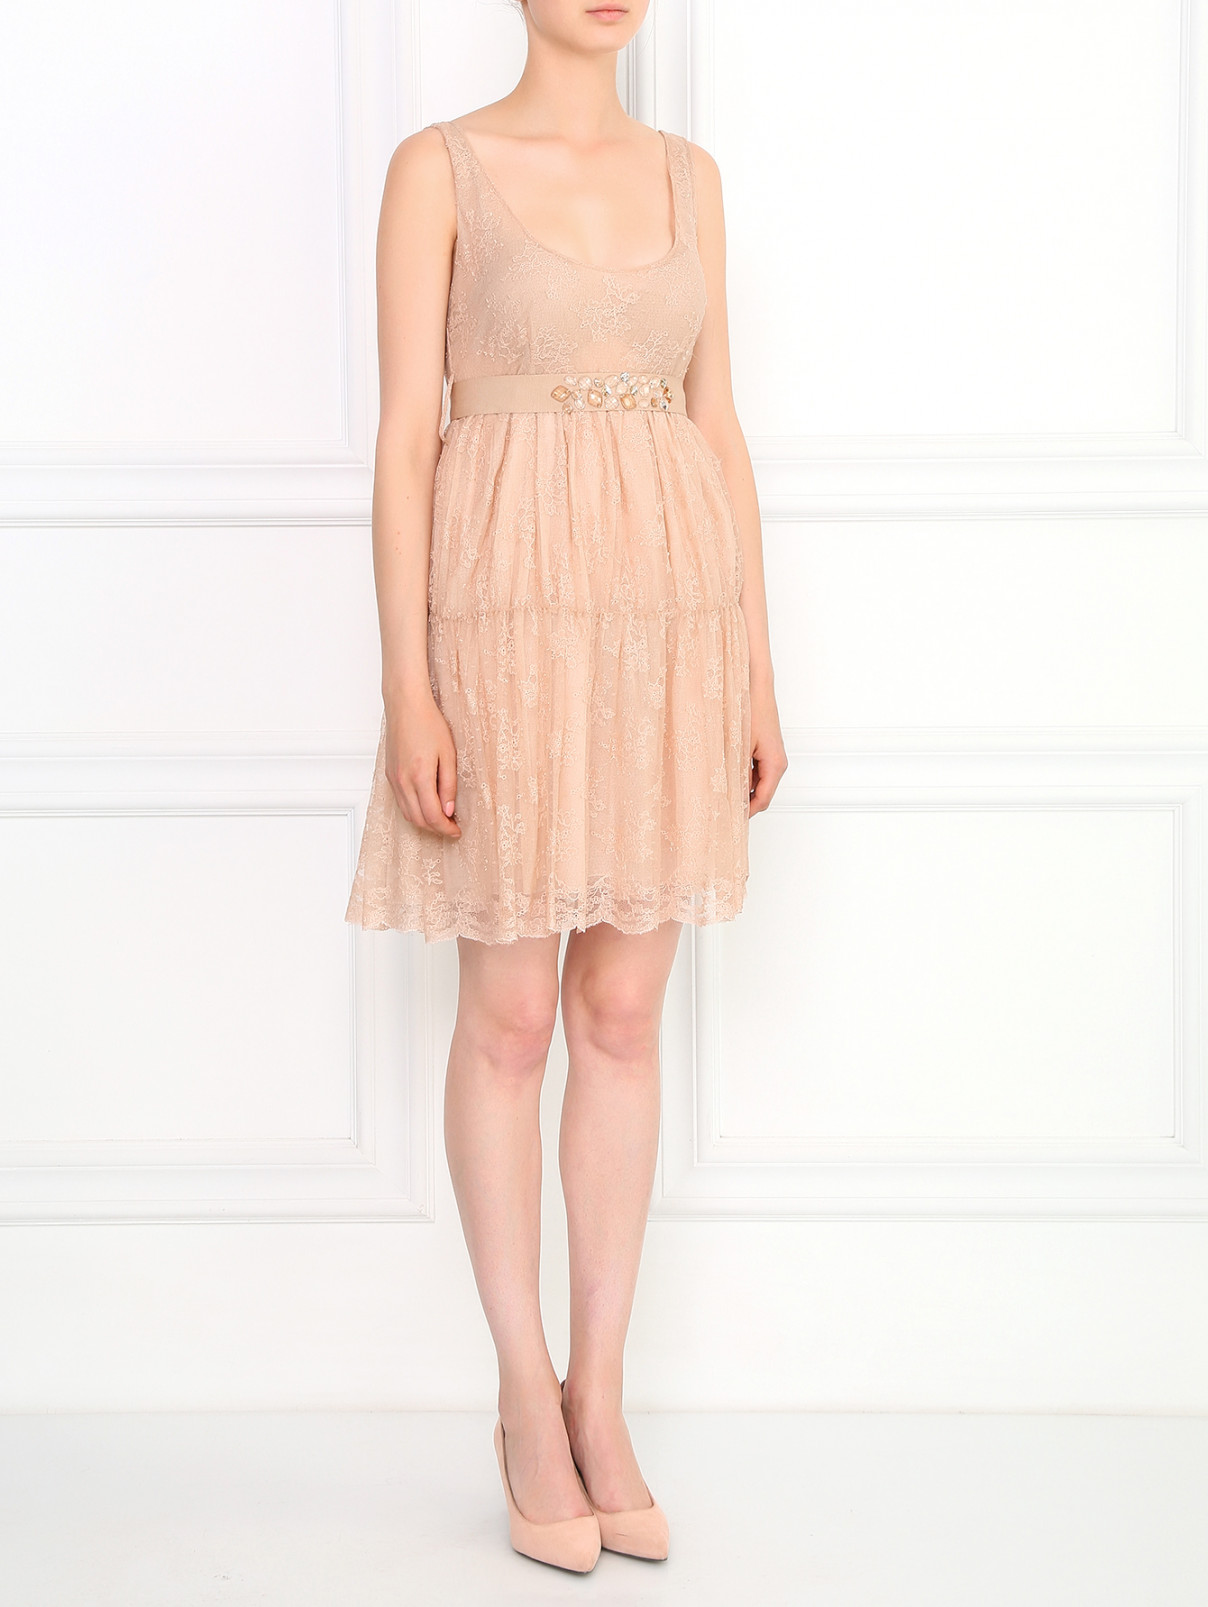 Кружевное платье из хлопка с декоративным поясом Blugirl  –  Модель Общий вид  – Цвет:  Бежевый